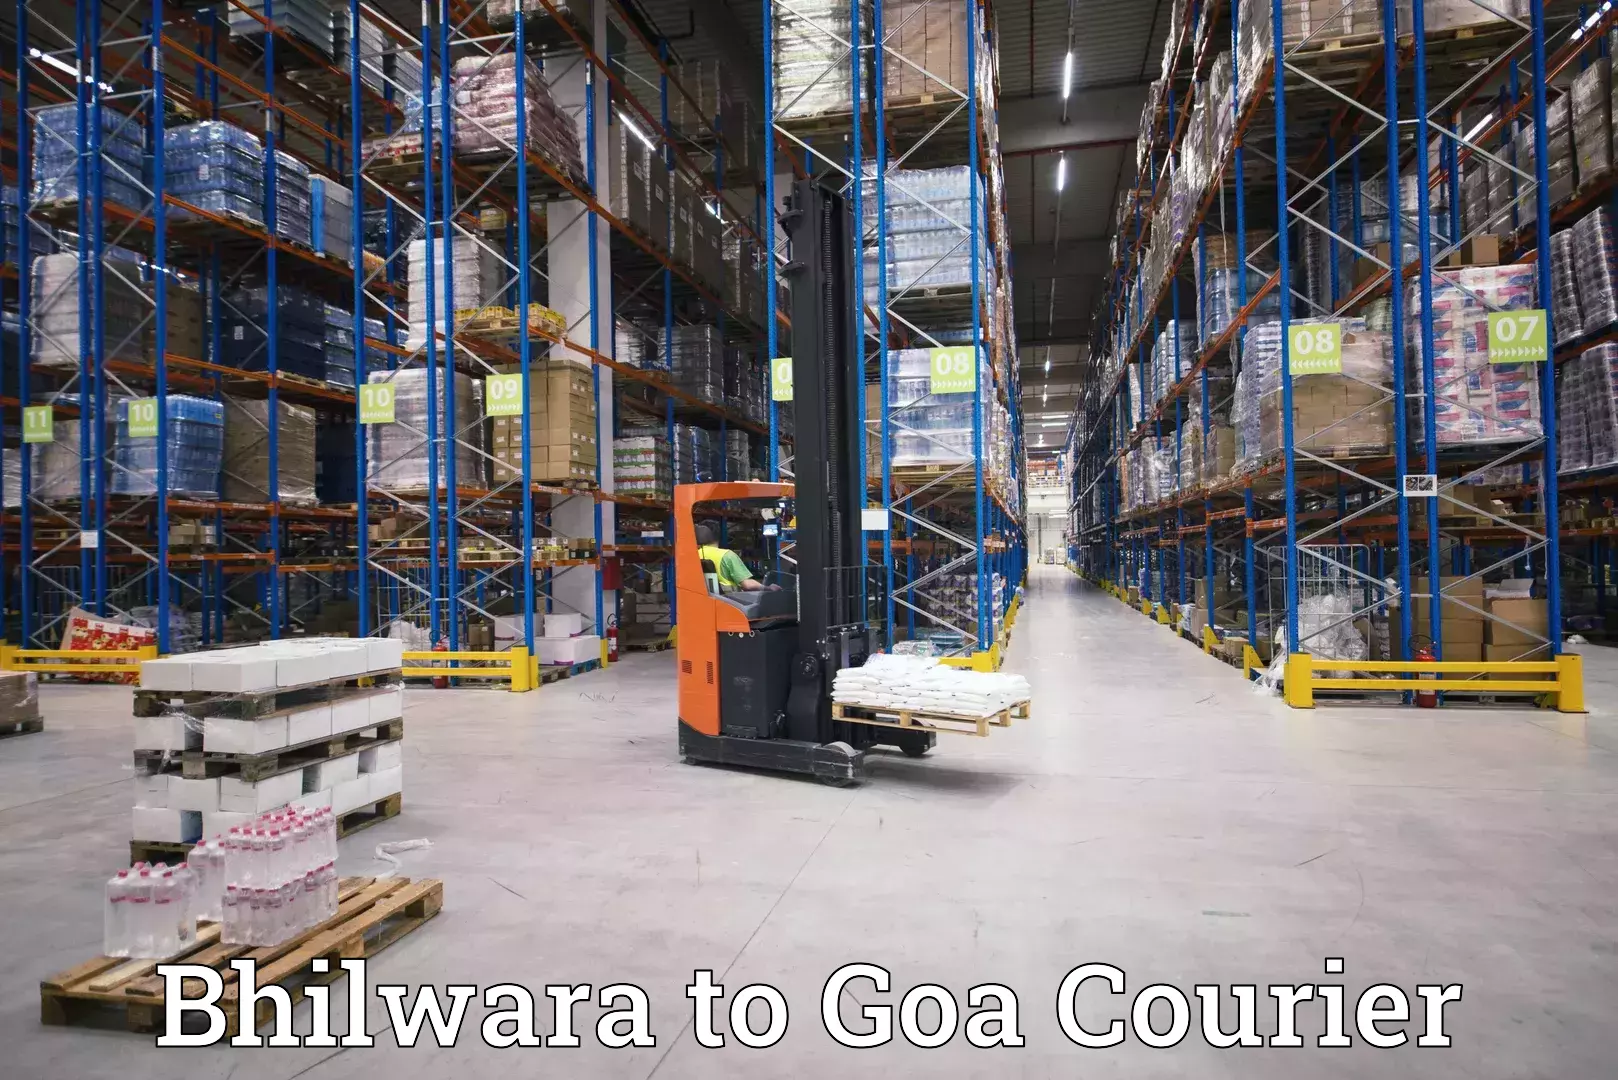 Large-scale shipping solutions Bhilwara to Panjim